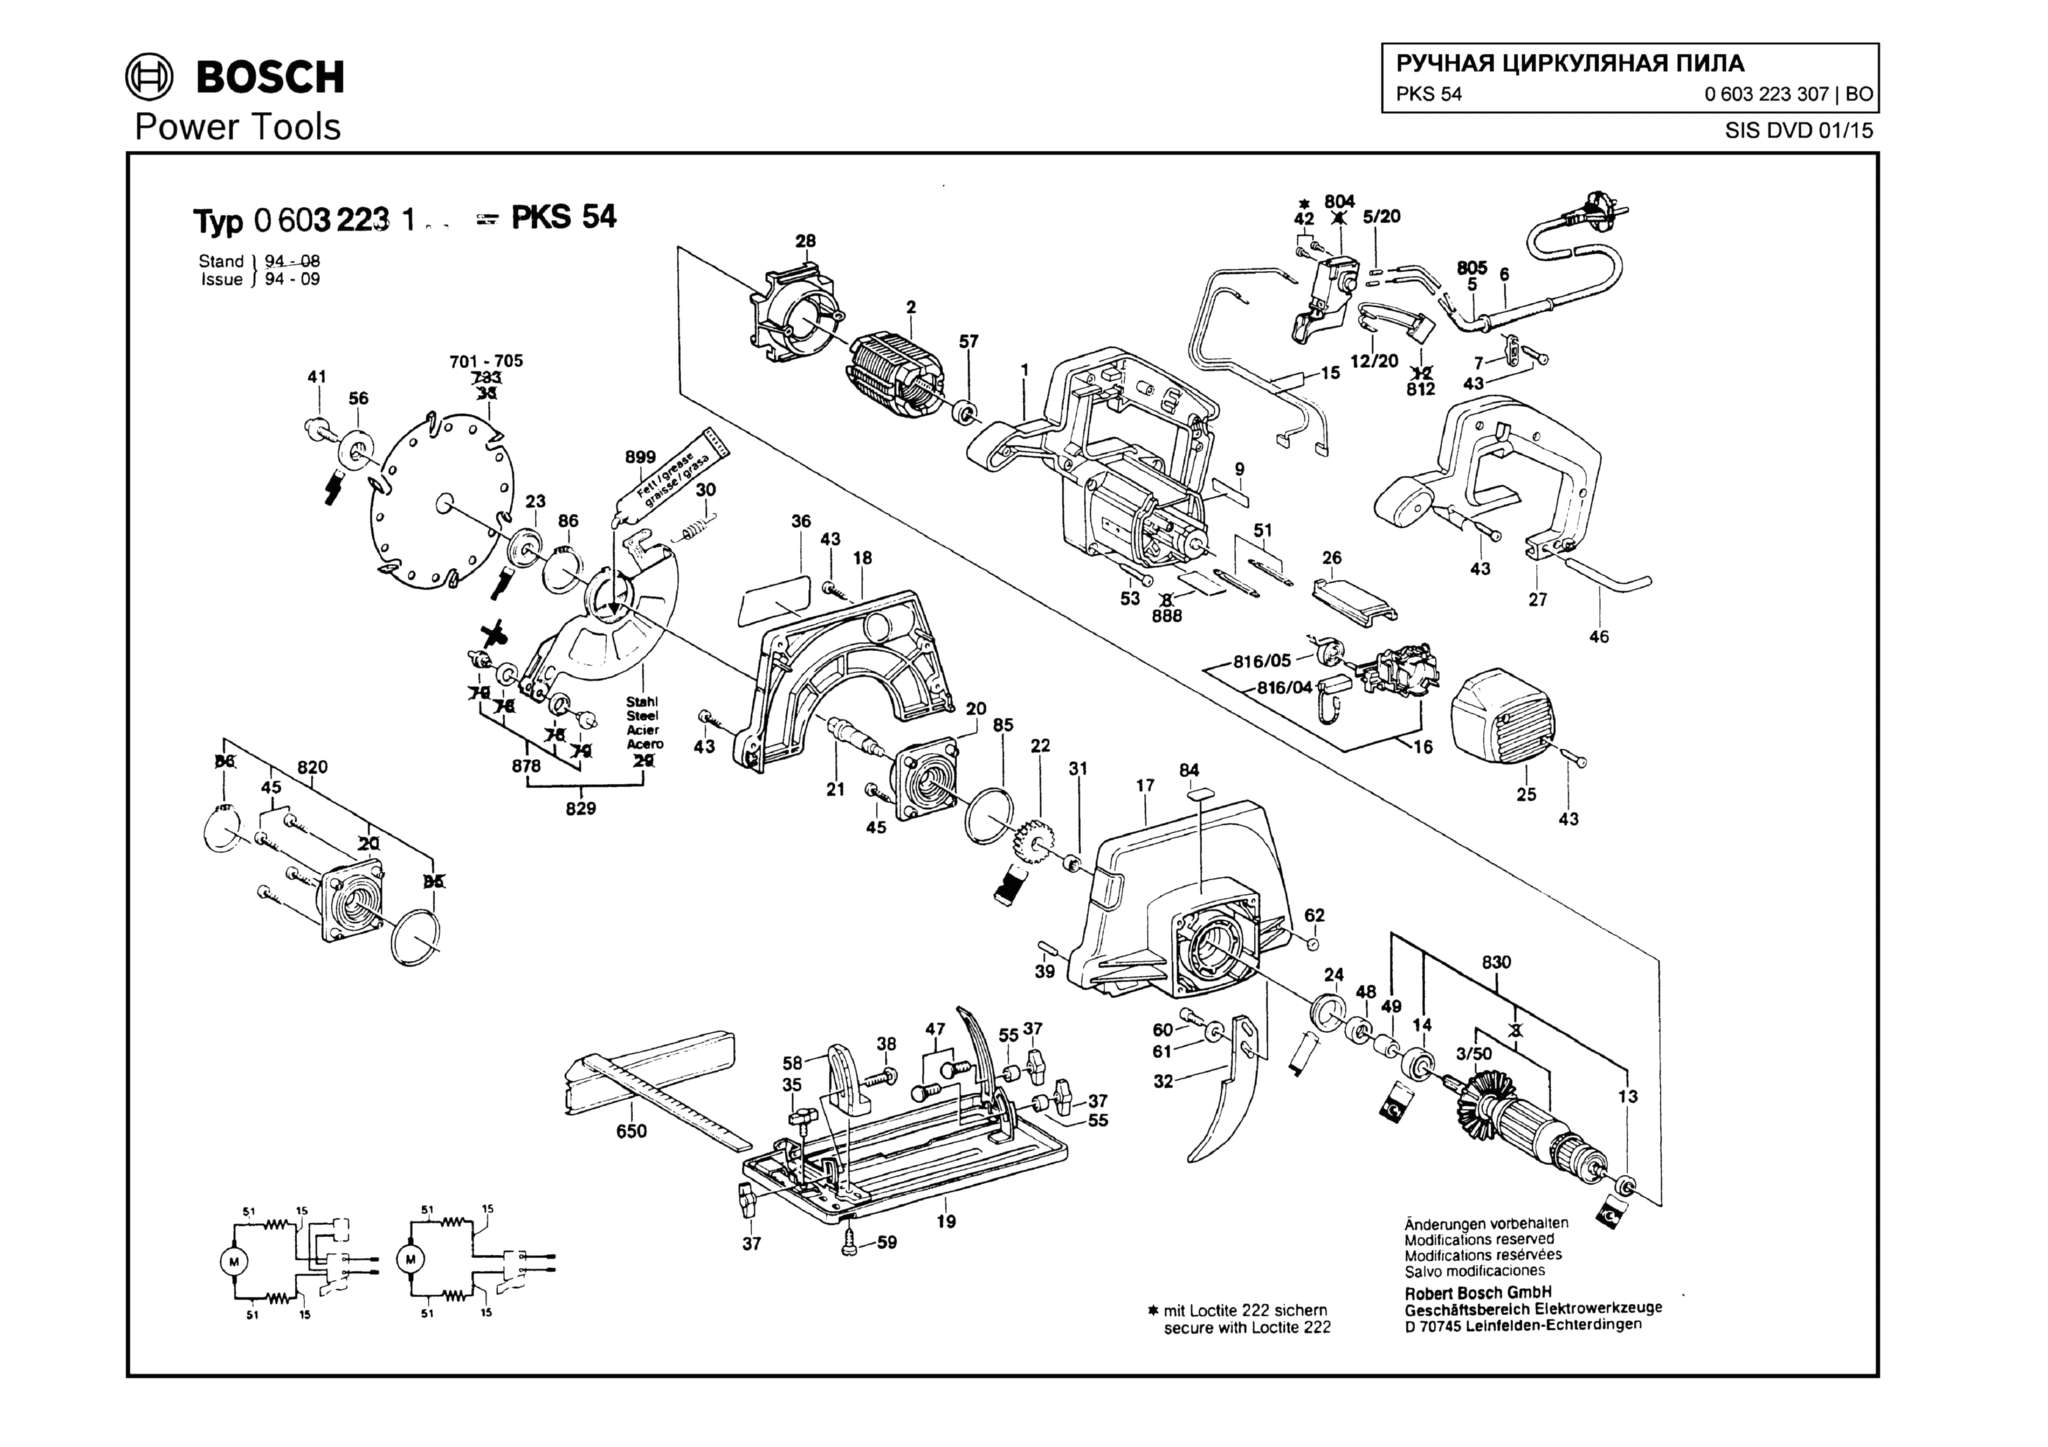 Запчасти, схема и деталировка Bosch PKS 54 (ТИП 0603223307)